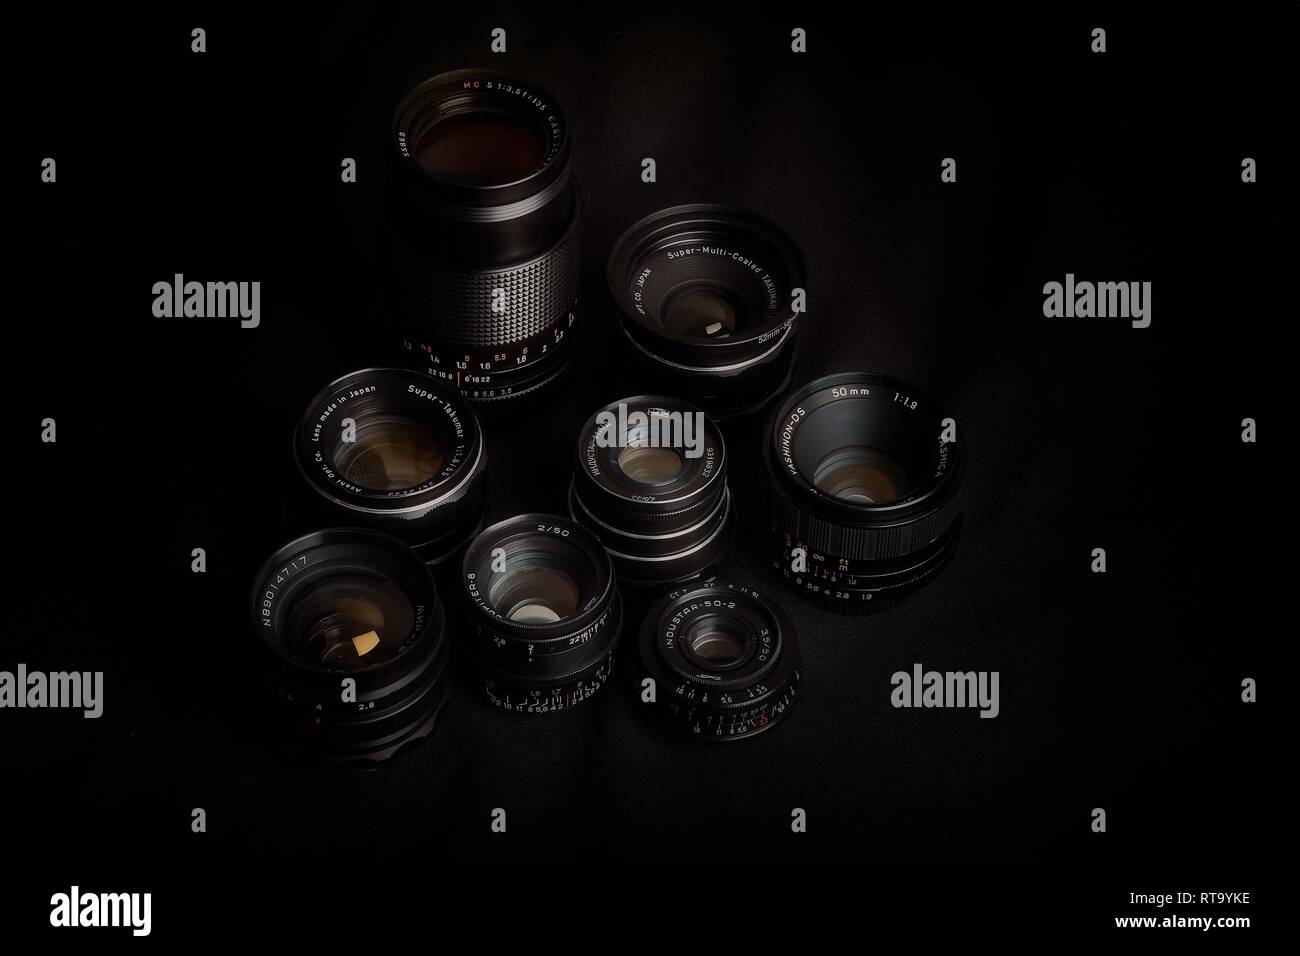 Essex, England - 28.02.2019: Sammlung von Vintage Objektive mit M42, M39 und Pentax K mounts vor einem schwarzen Hintergrund. Stockfoto